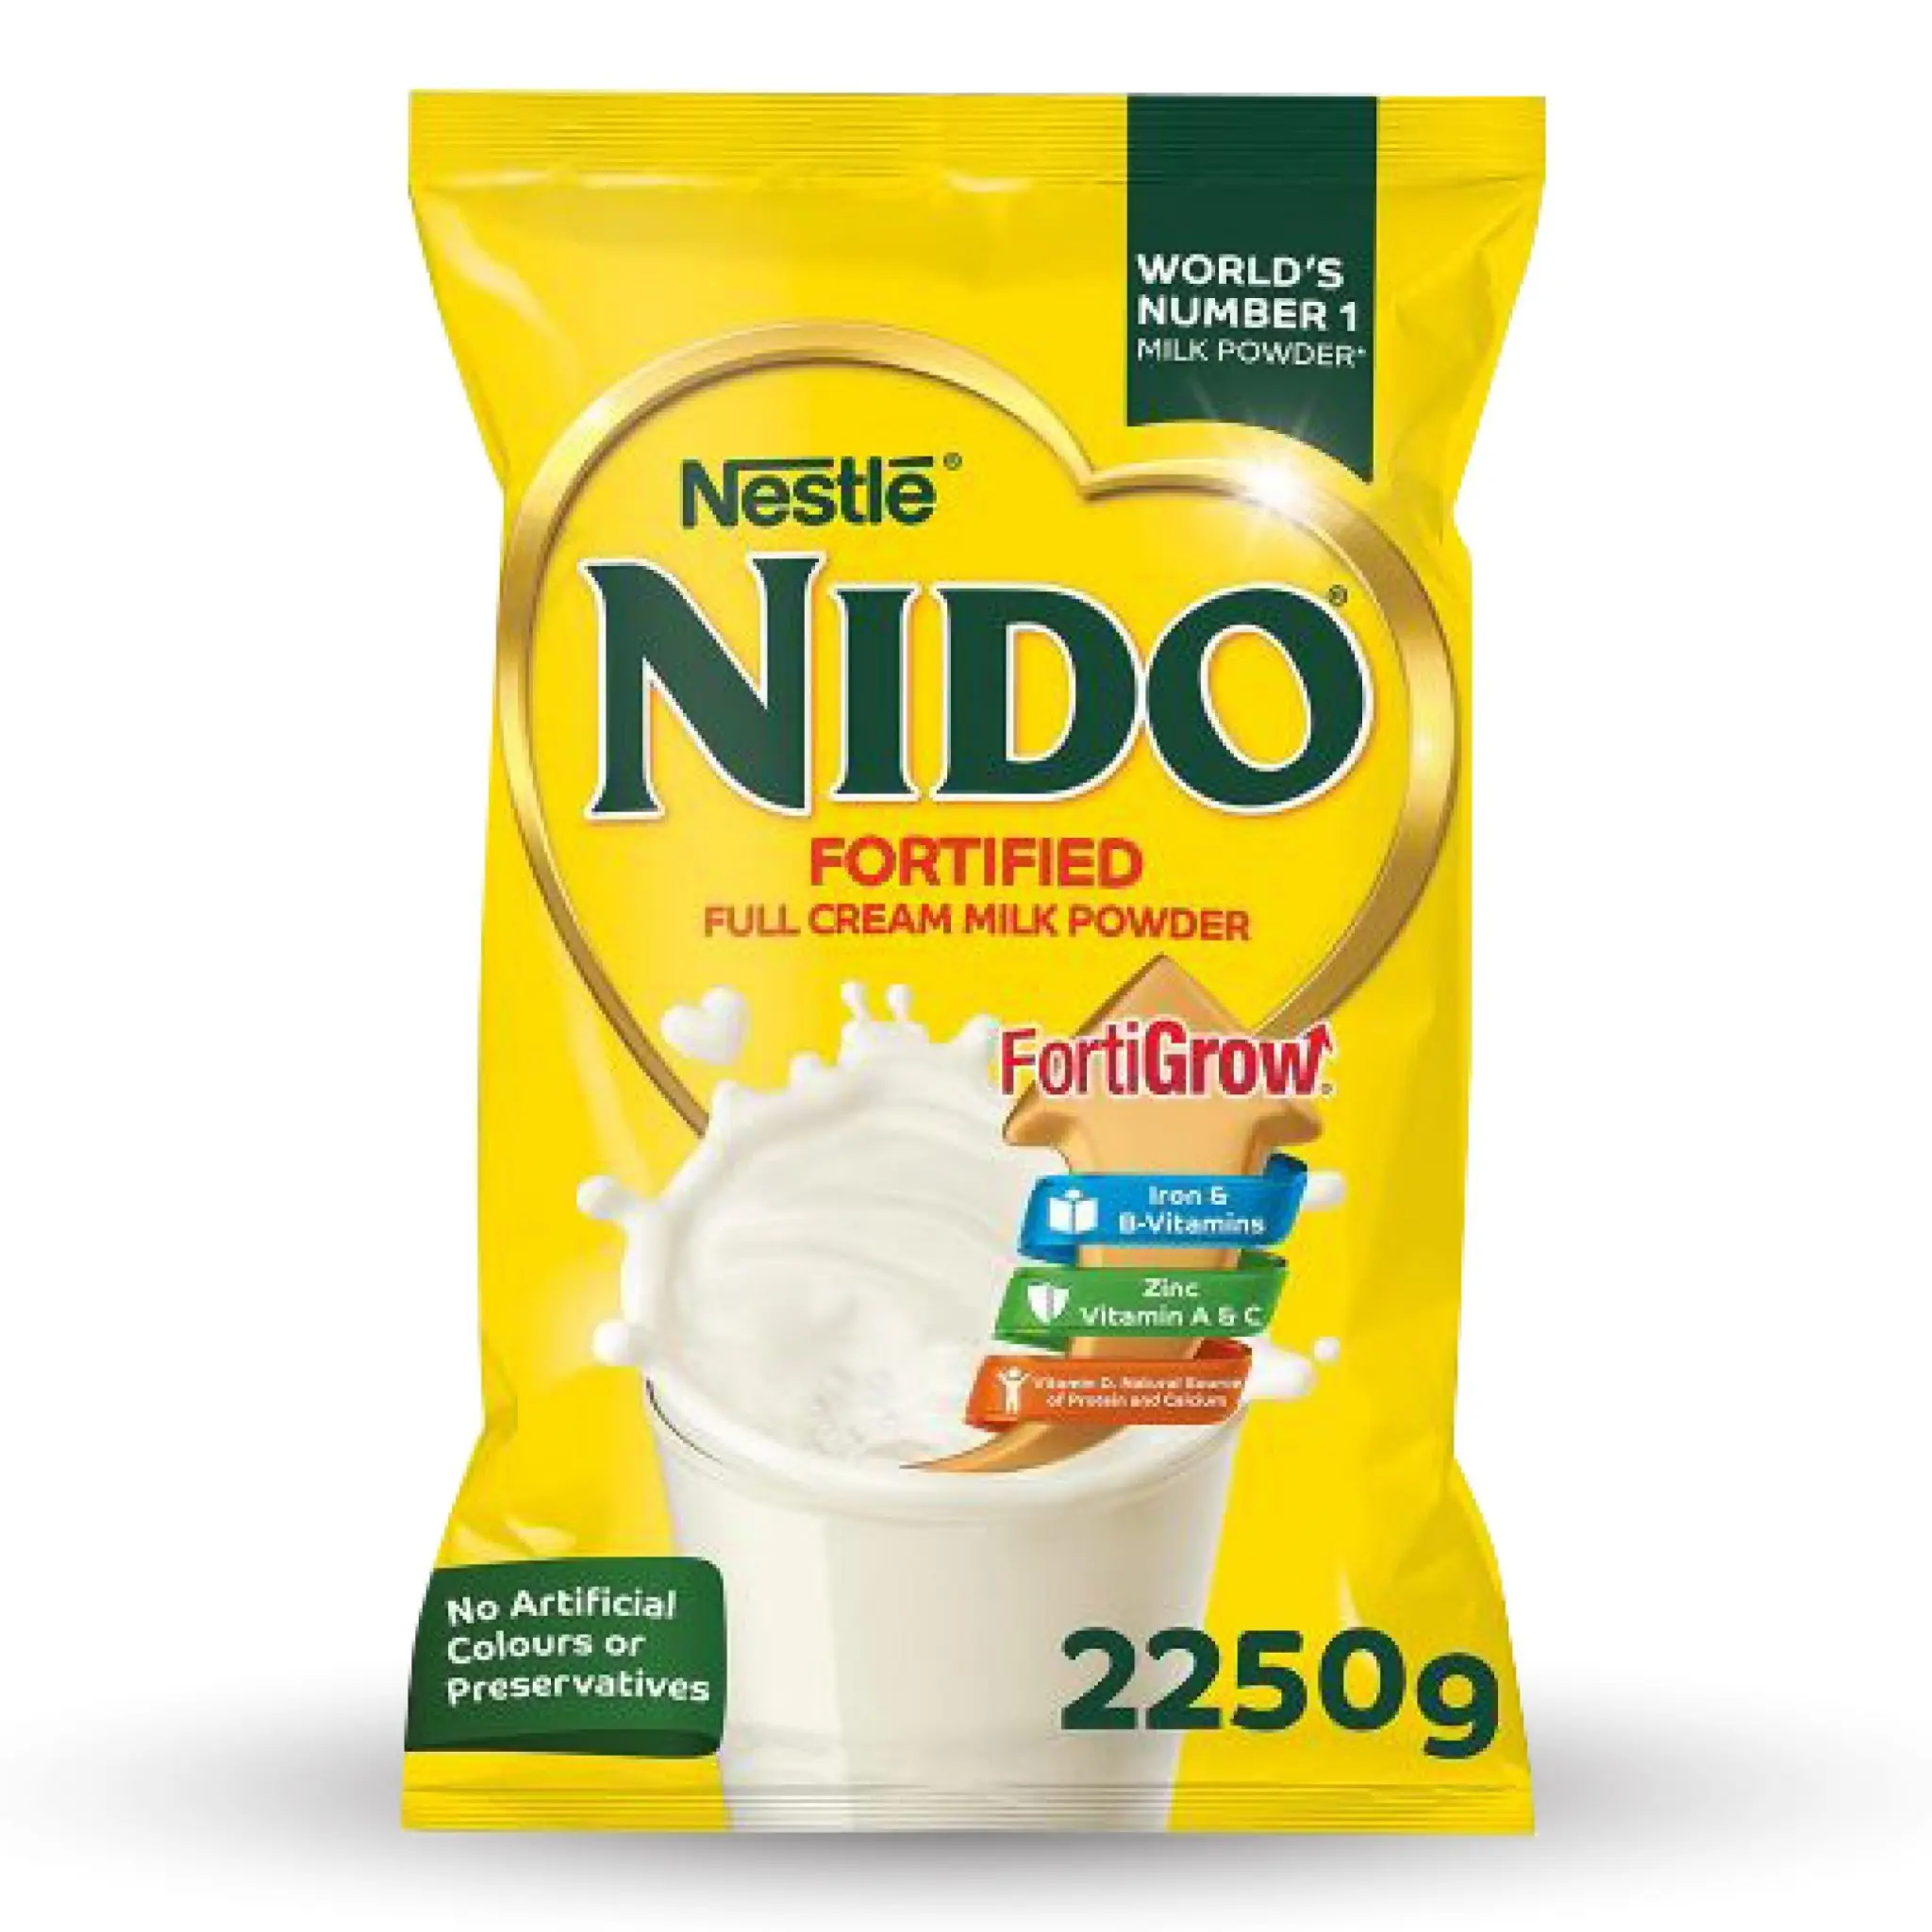 В наличии оптом, сухое молоко Nestle Nido, мгновенный крем, сухое молоко по оптовым ценам